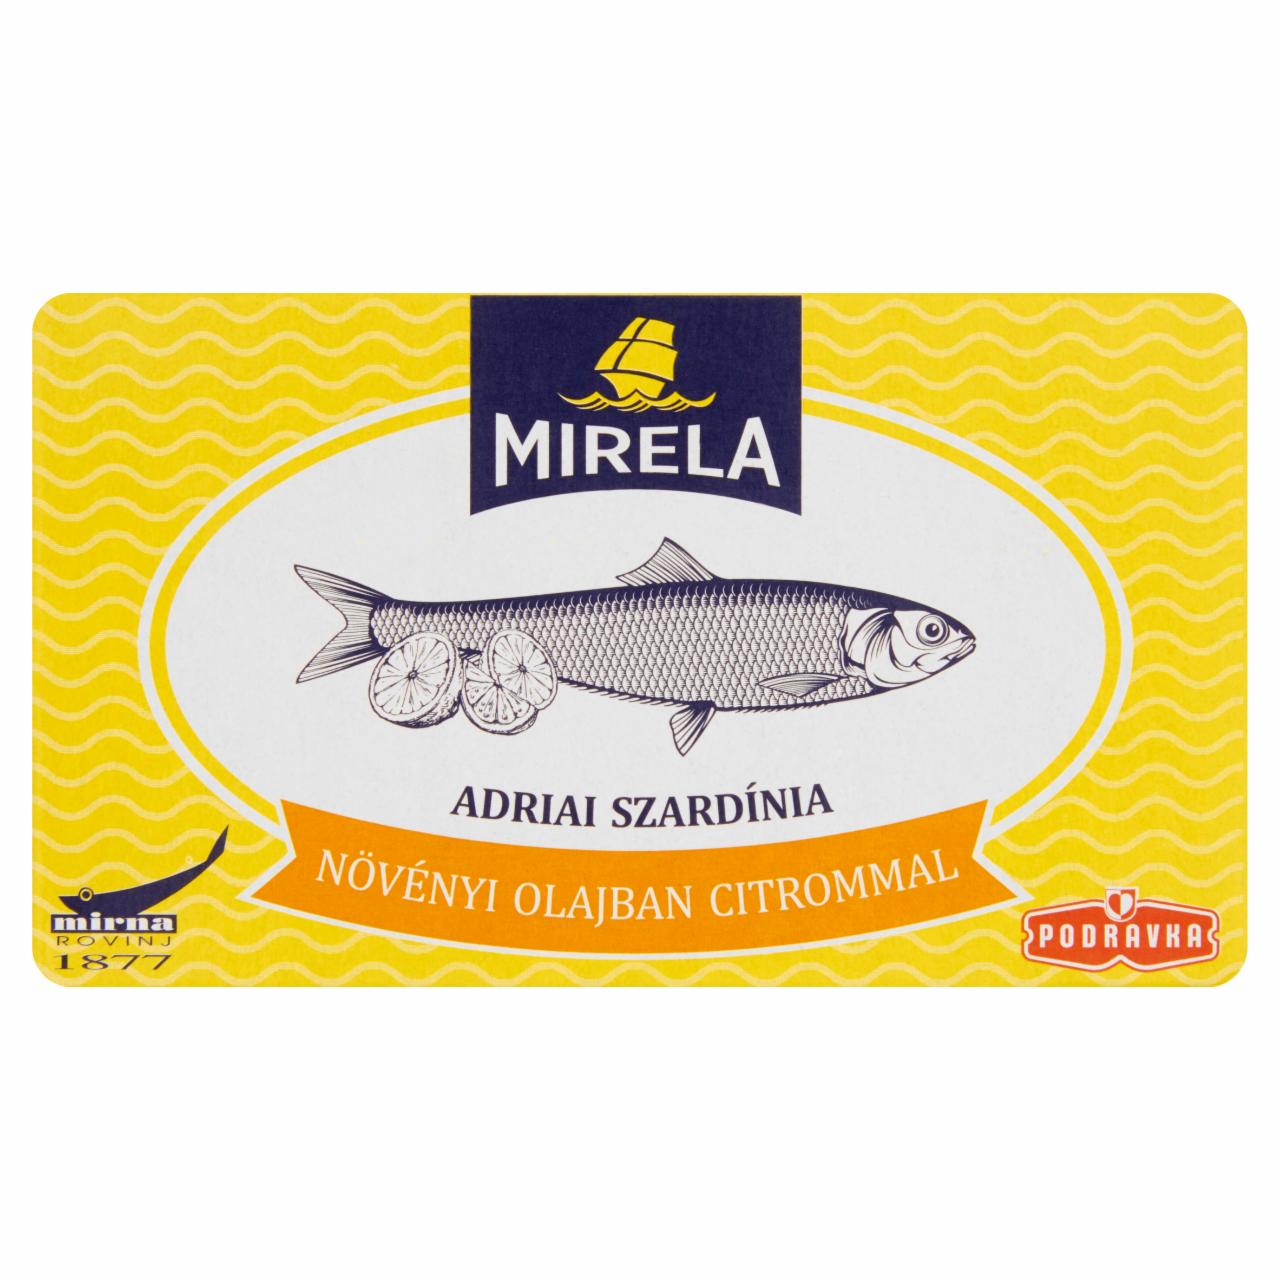 Képek - Mirela adriai szardínia növényi olajban citrommal 100 g